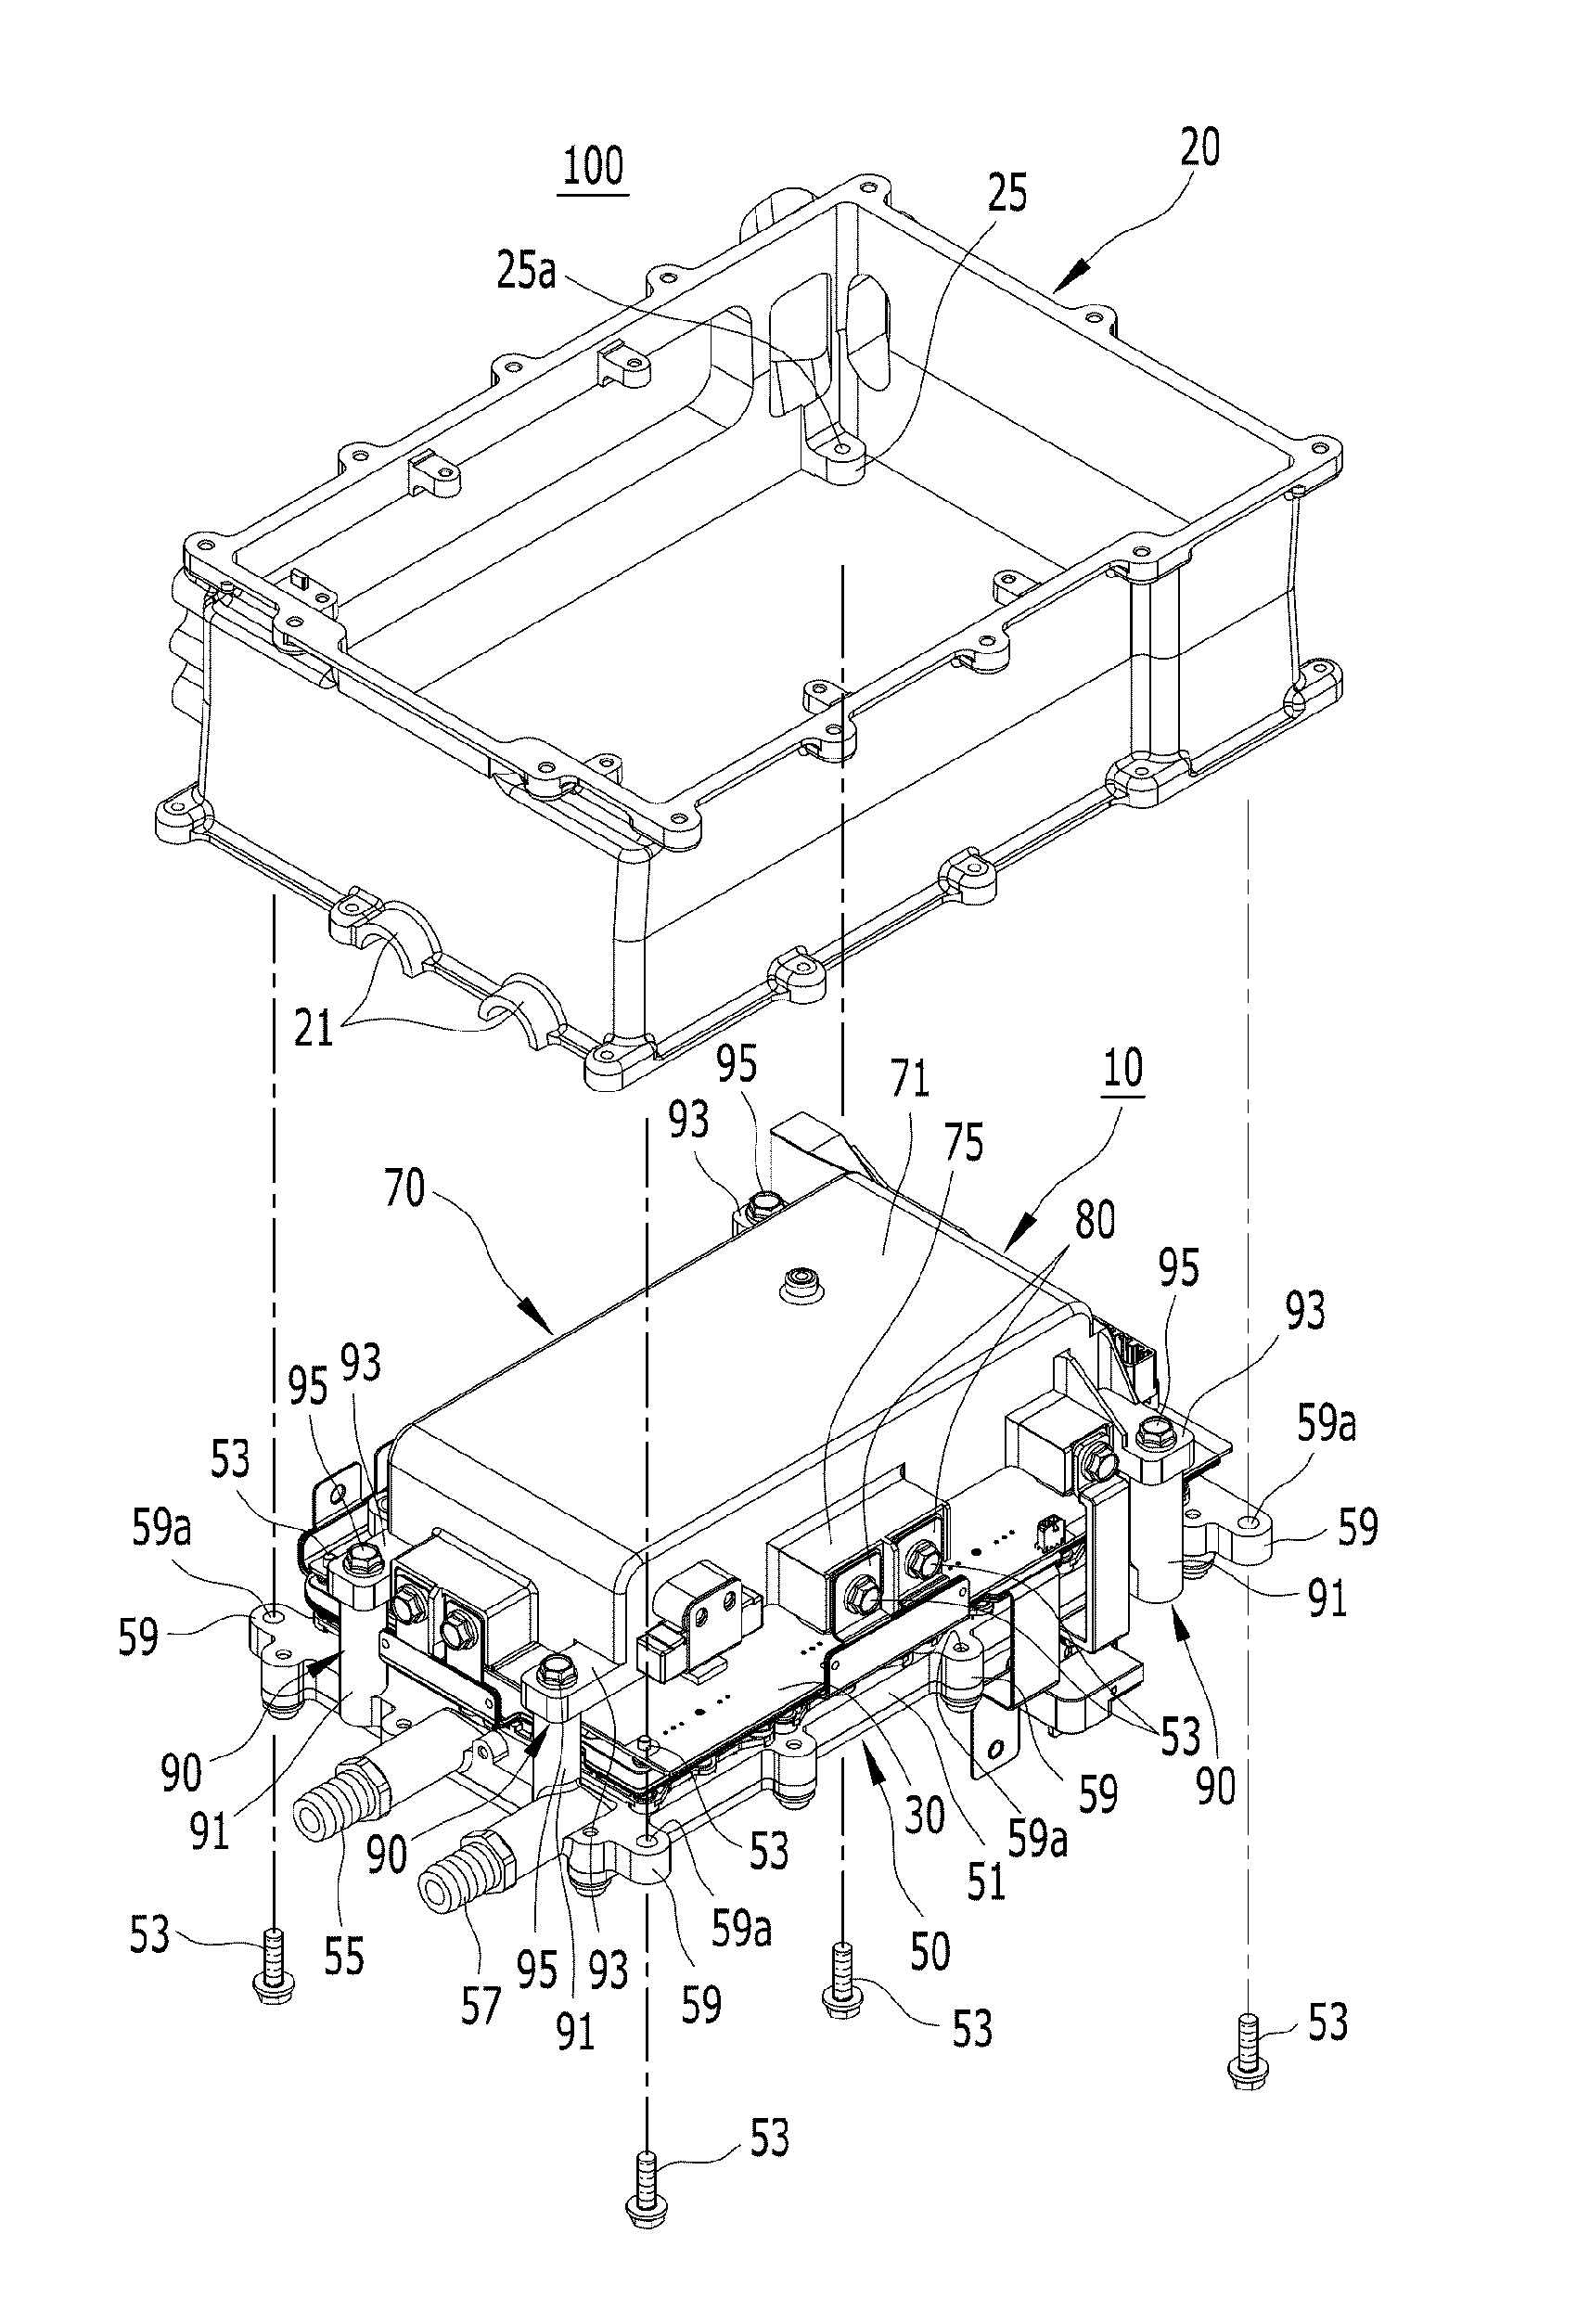 Inverter for vehicle